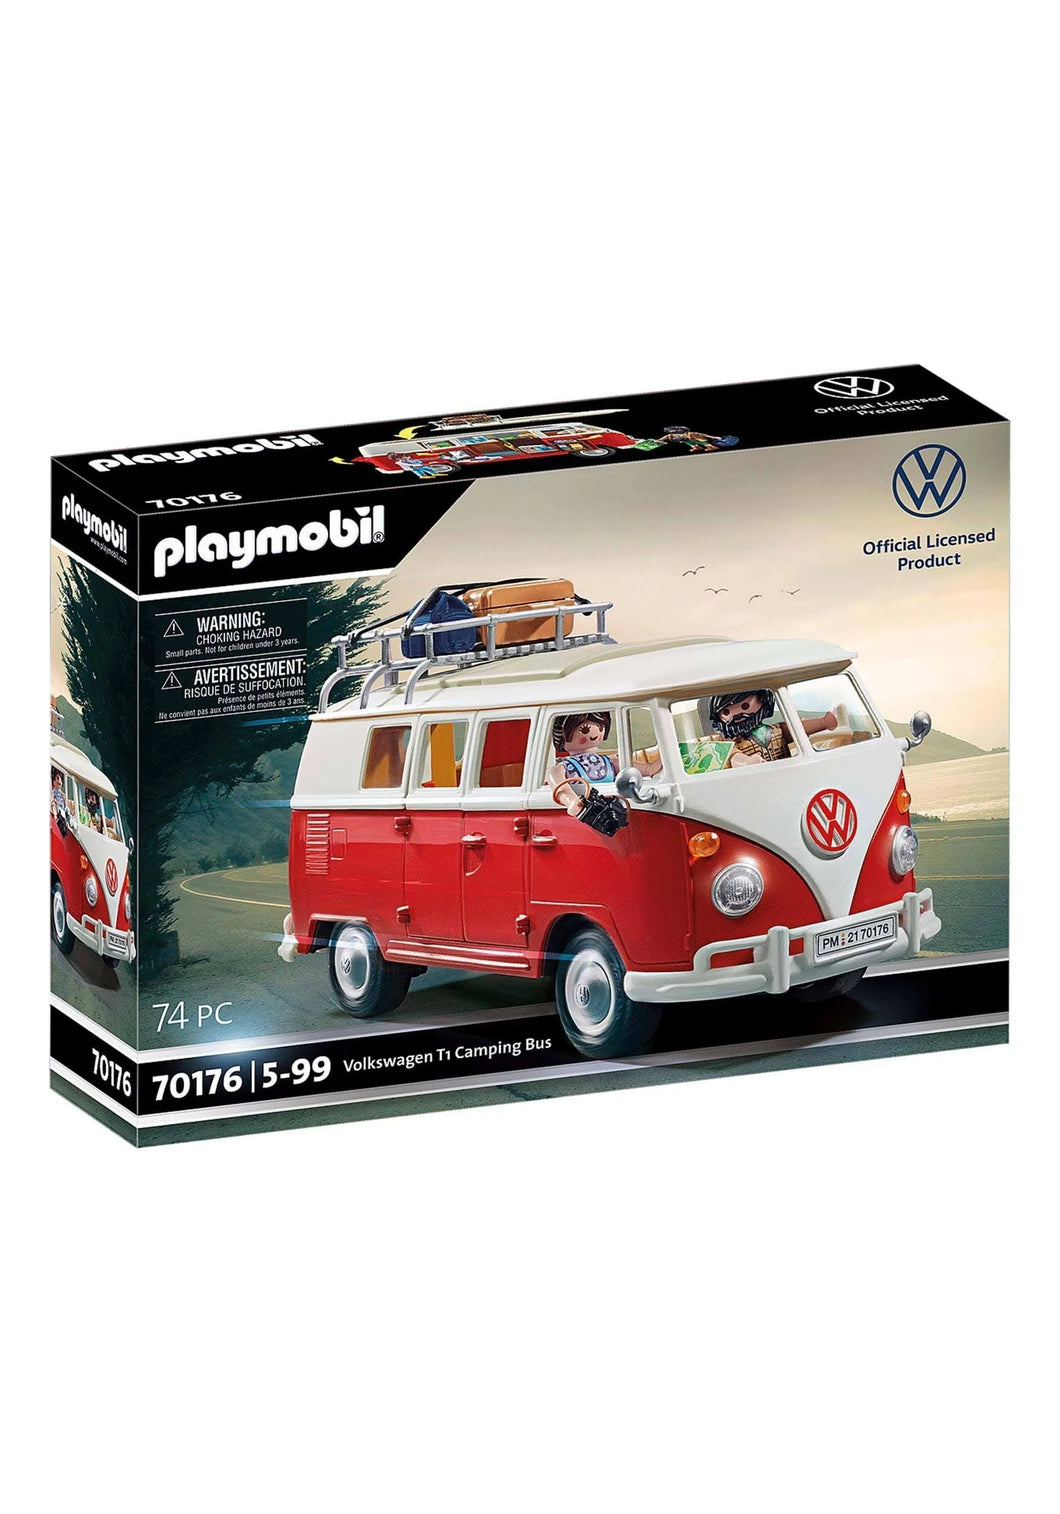 Playmobil Volkswagen Camper Van 70176